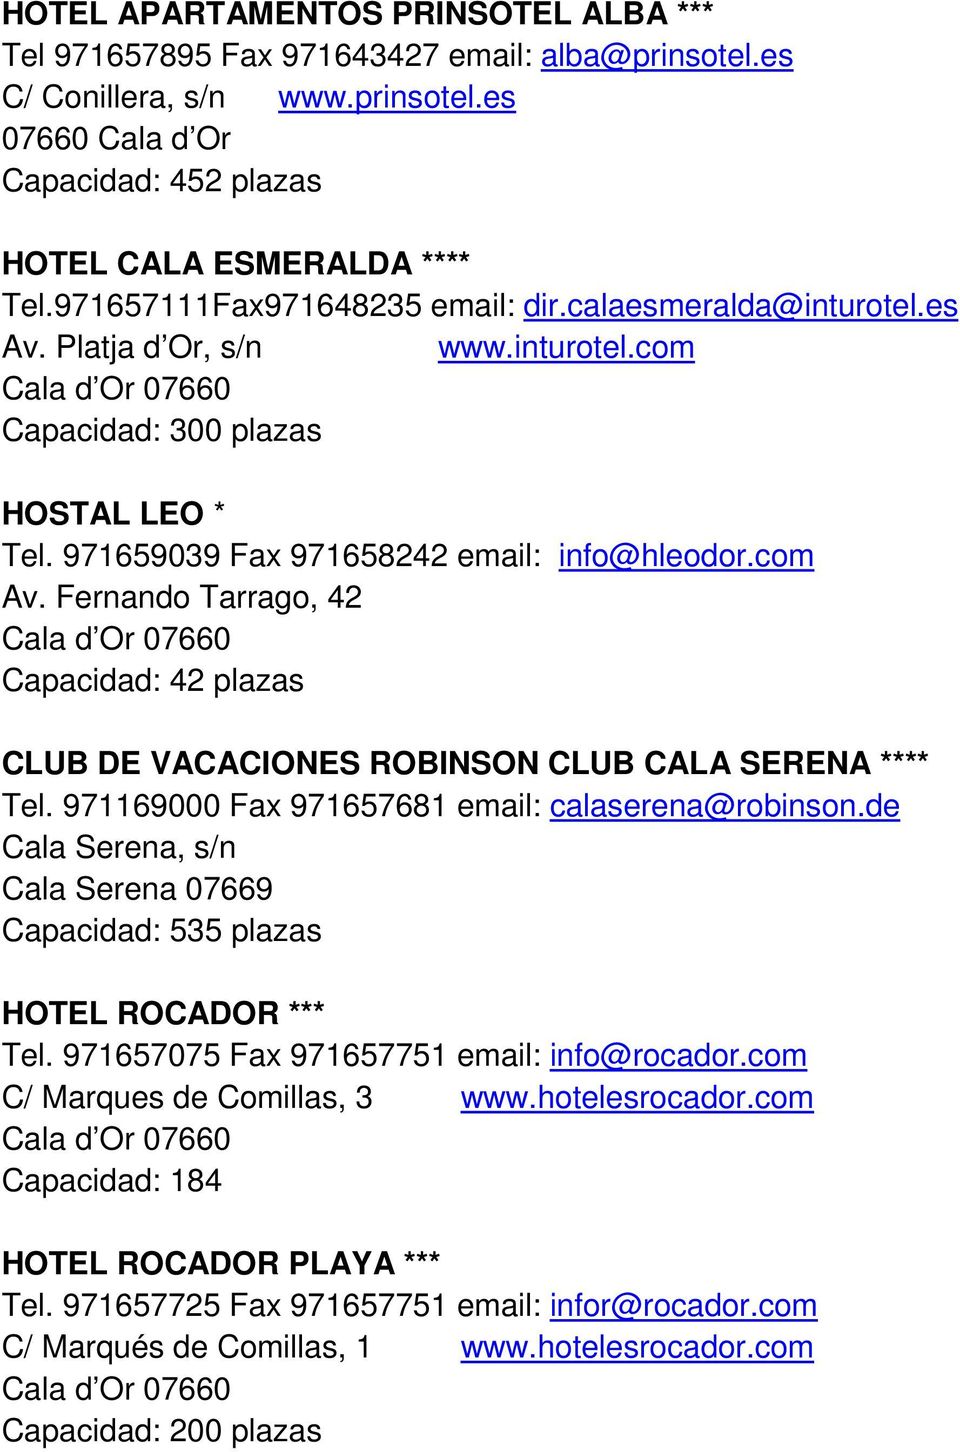 Fernando Tarrago, 42 Capacidad: 42 plazas CLUB DE VACACIONES ROBINSON CLUB CALA SERENA **** Tel. 971169000 Fax 971657681 email: calaserena@robinson.